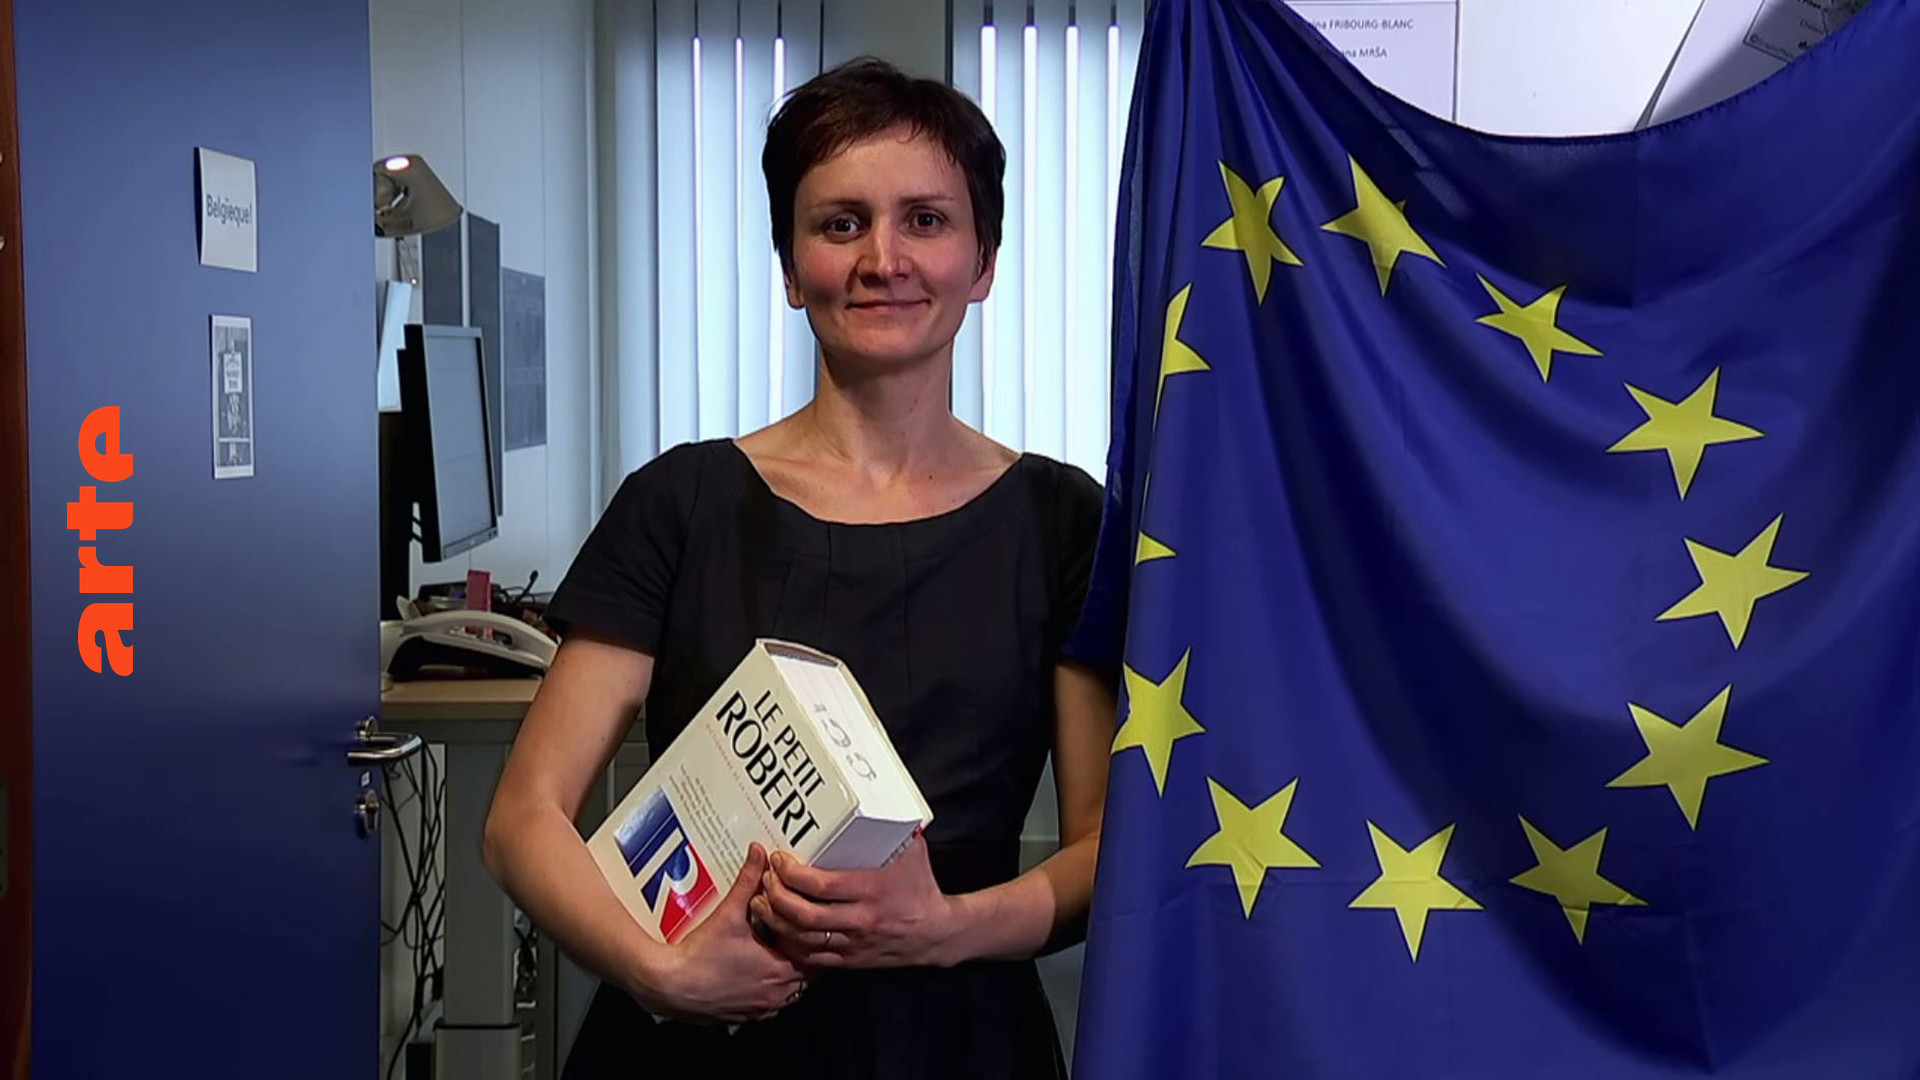 Marina Fribourg-Blanc, Übersetzerin bei der UE-Kommission